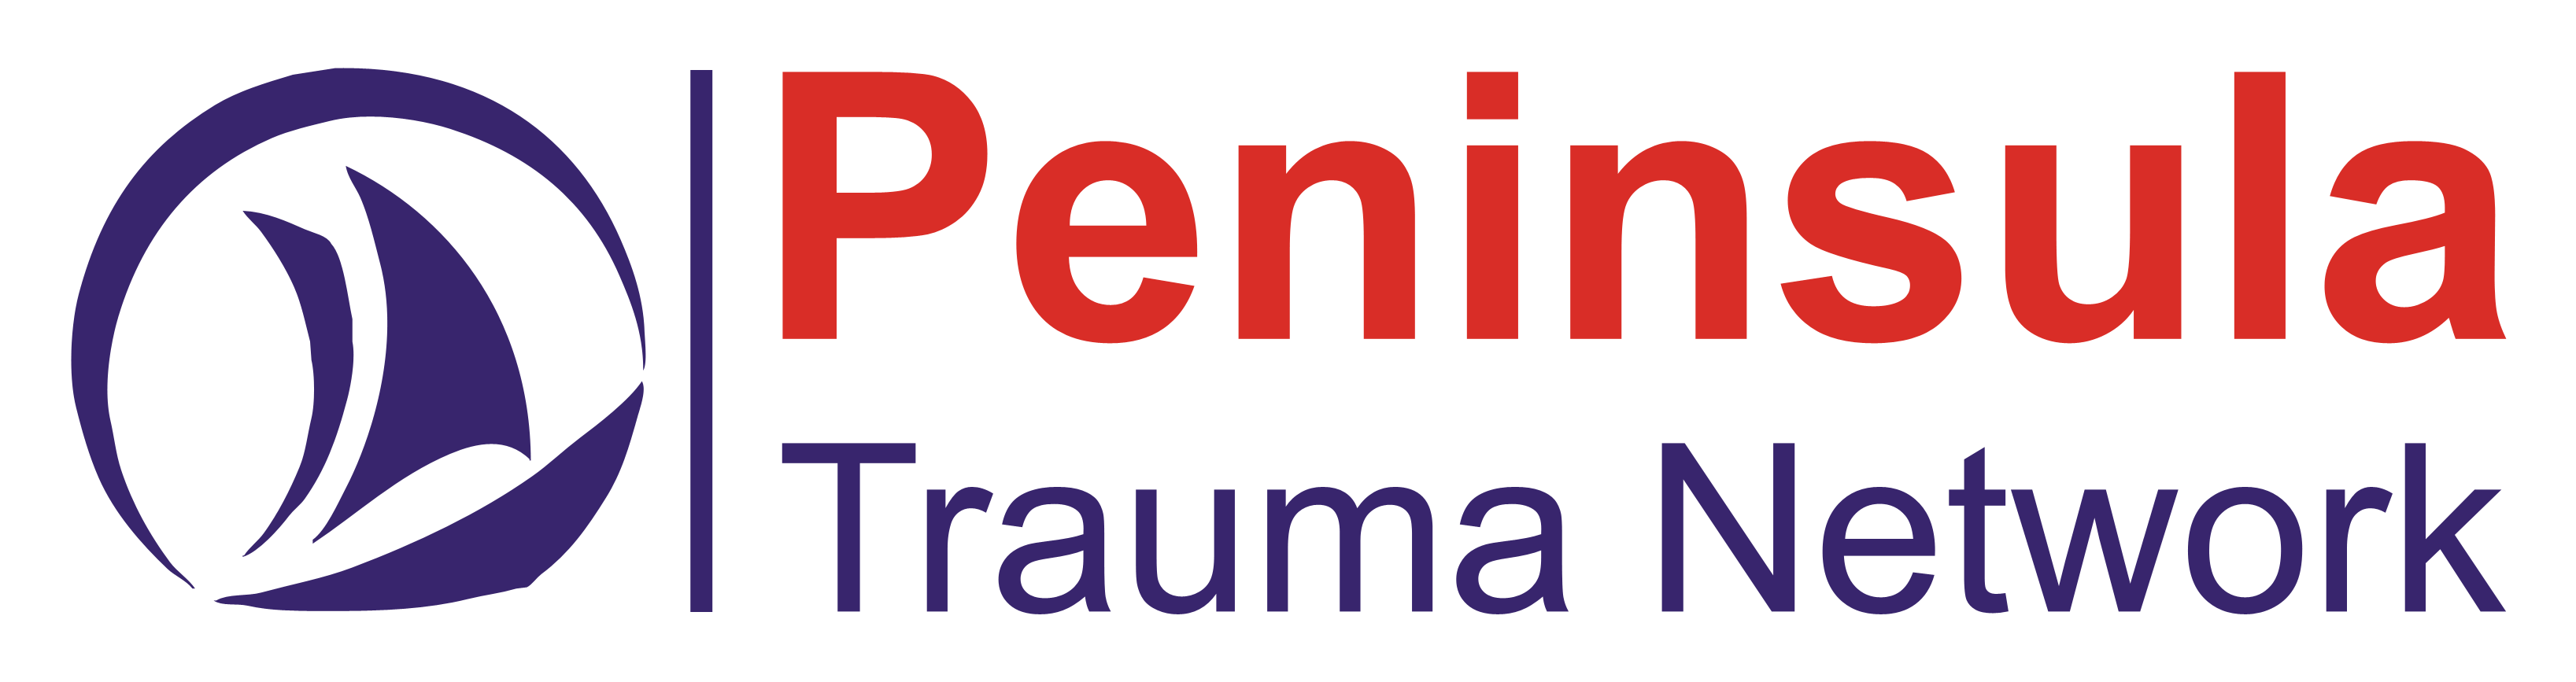 Peninsula Trauma Network